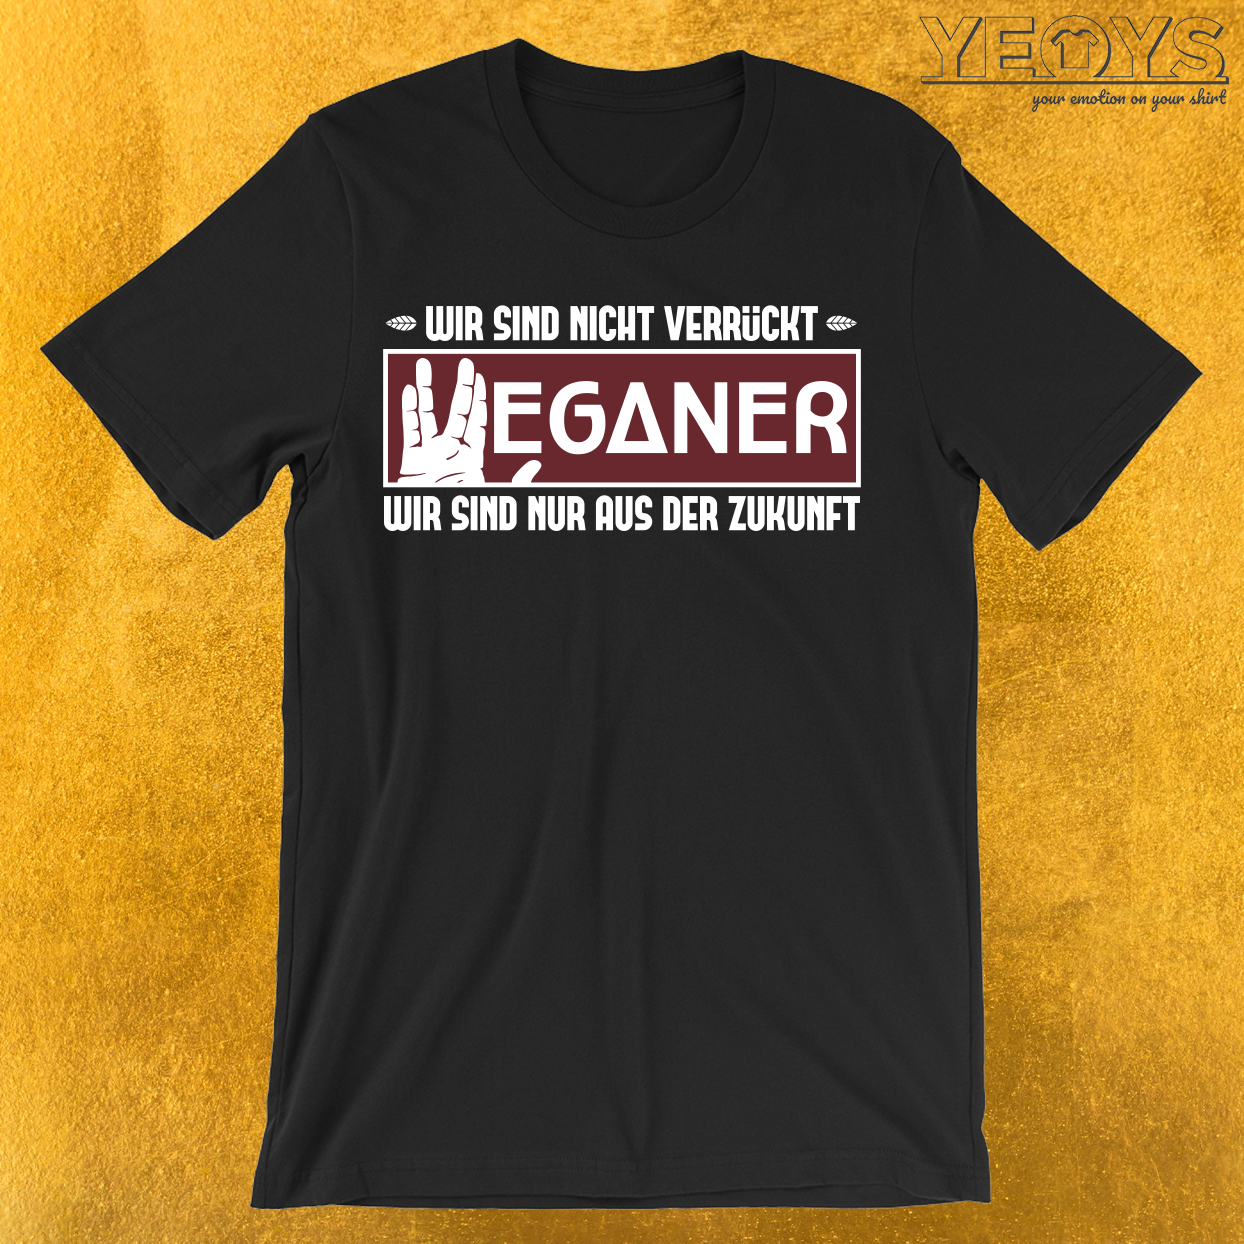 Veganer sind aus der Zukunft T-Shirt